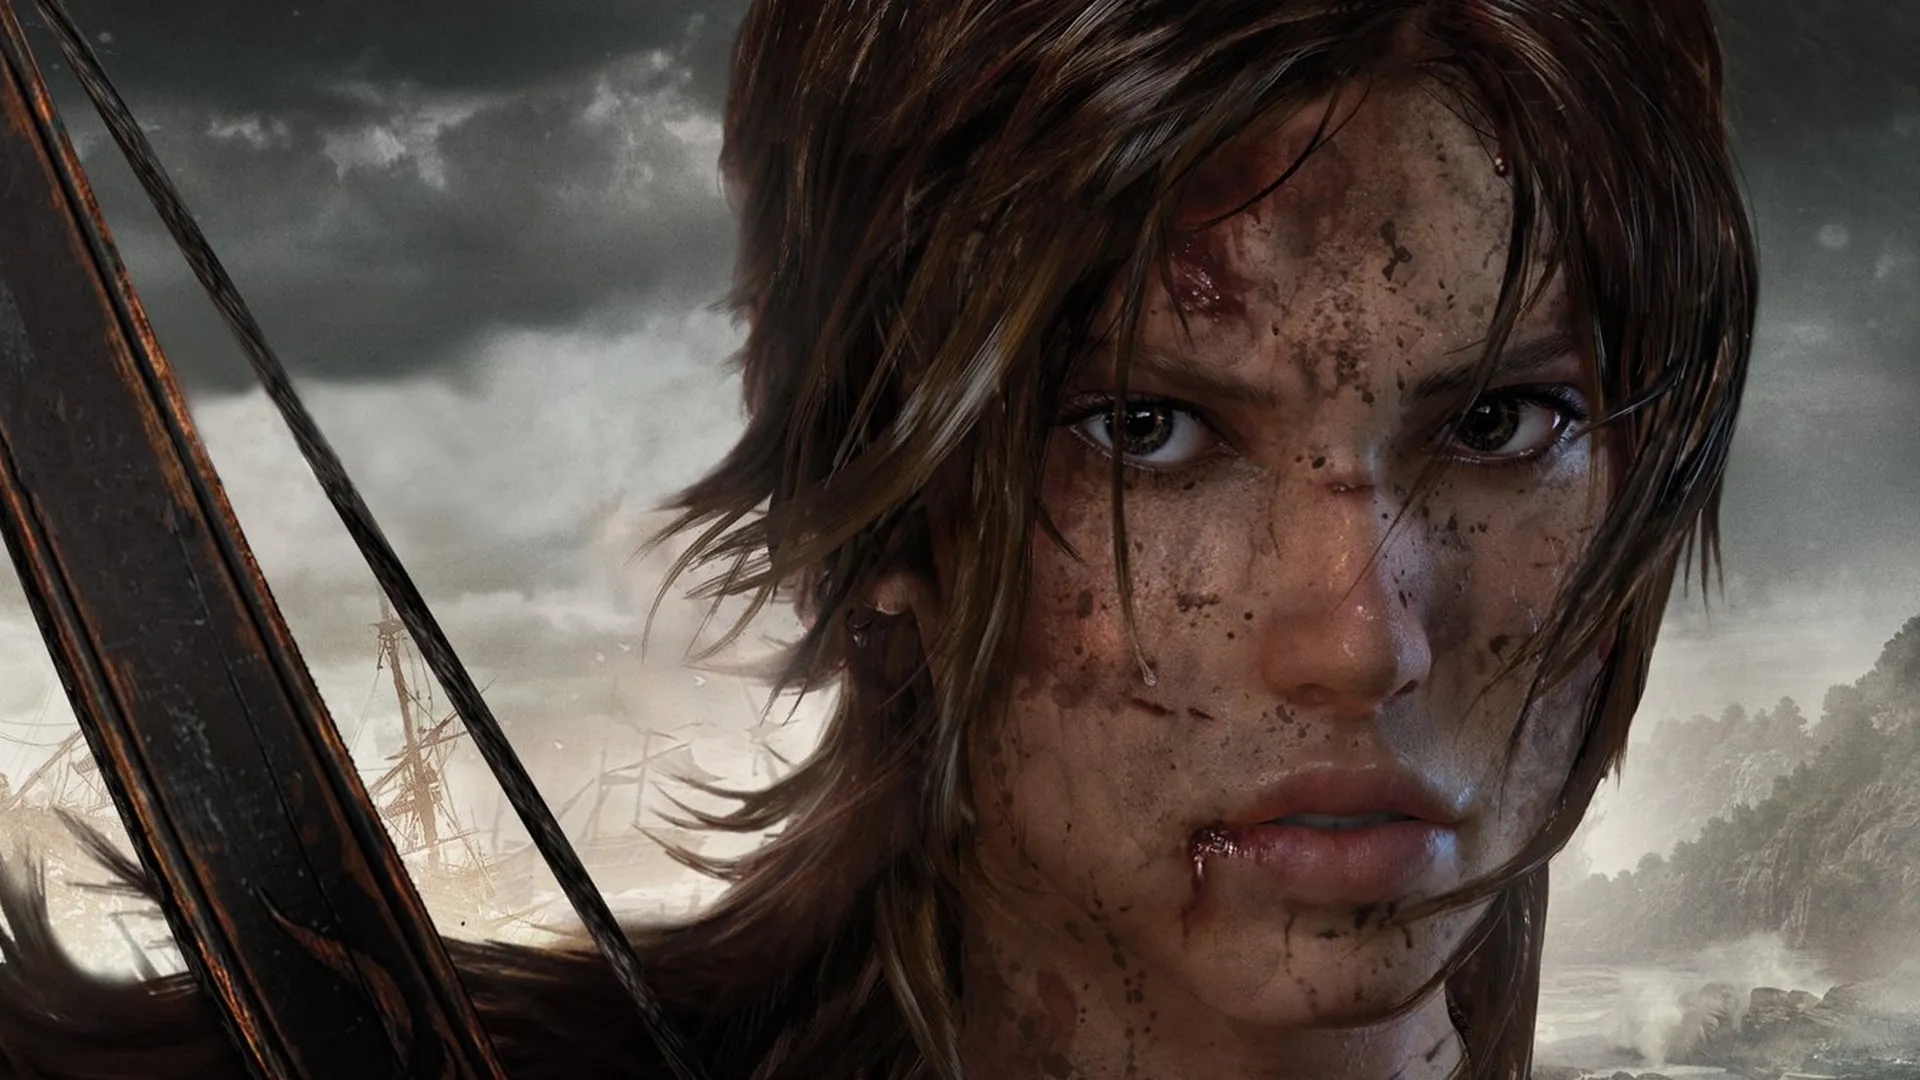 نسخه جدید Tomb Raider